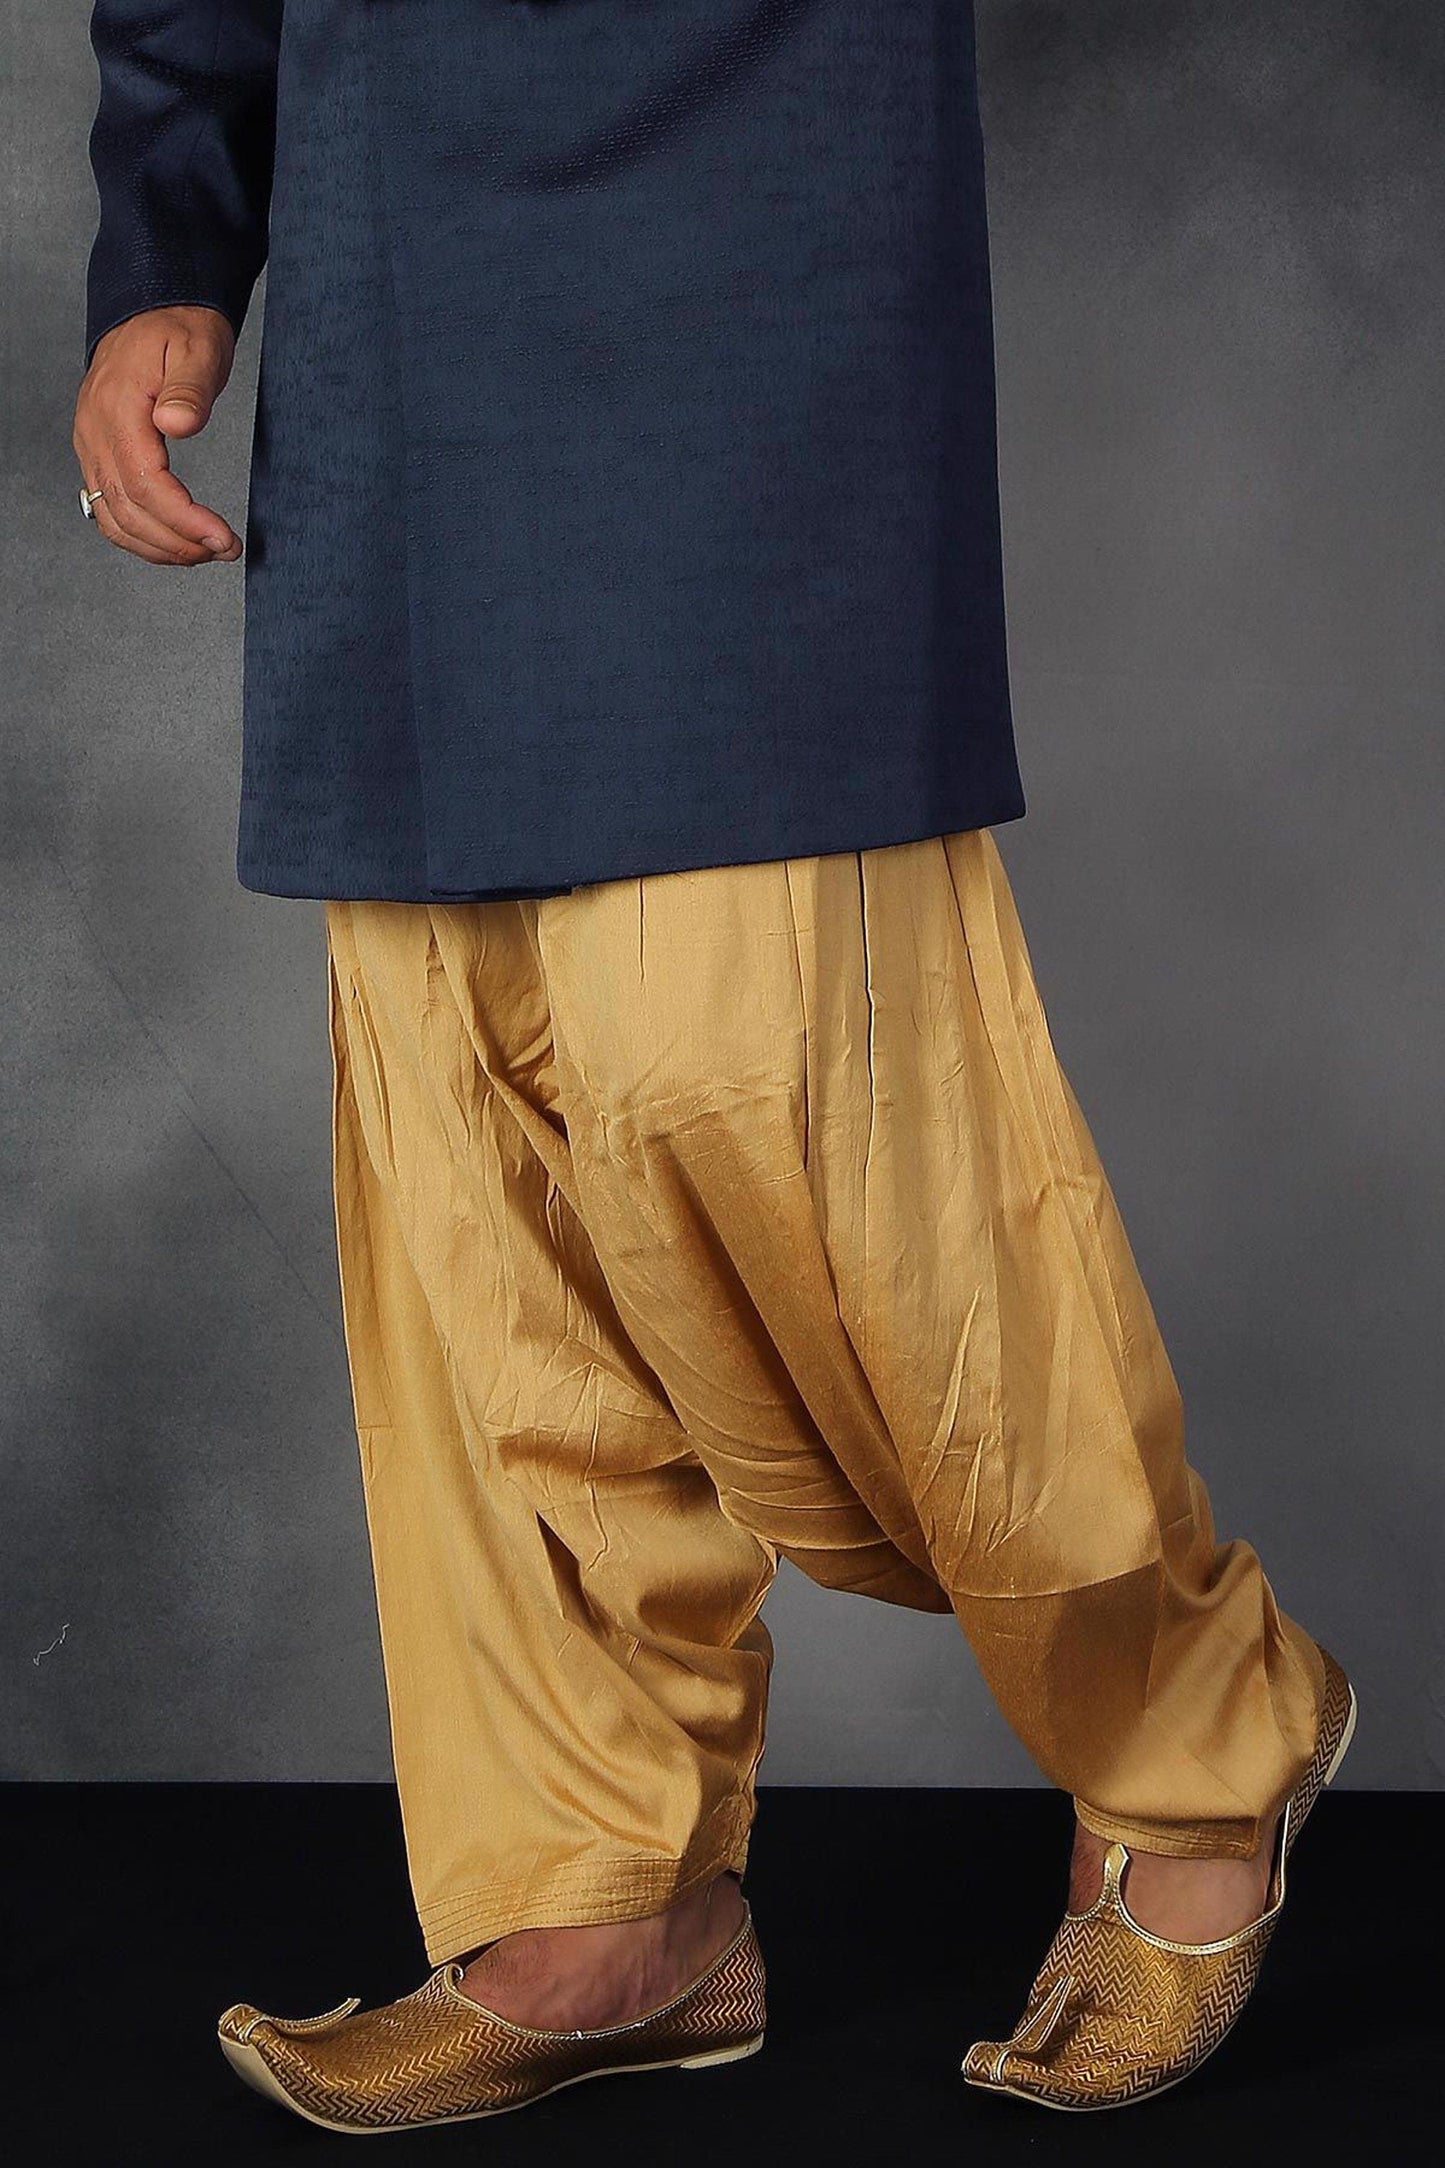 Mens wedding sherwani / Blue royal sherwani / Indian suit for men / indian mens wear / indian dress / sherwani for men / indian suit